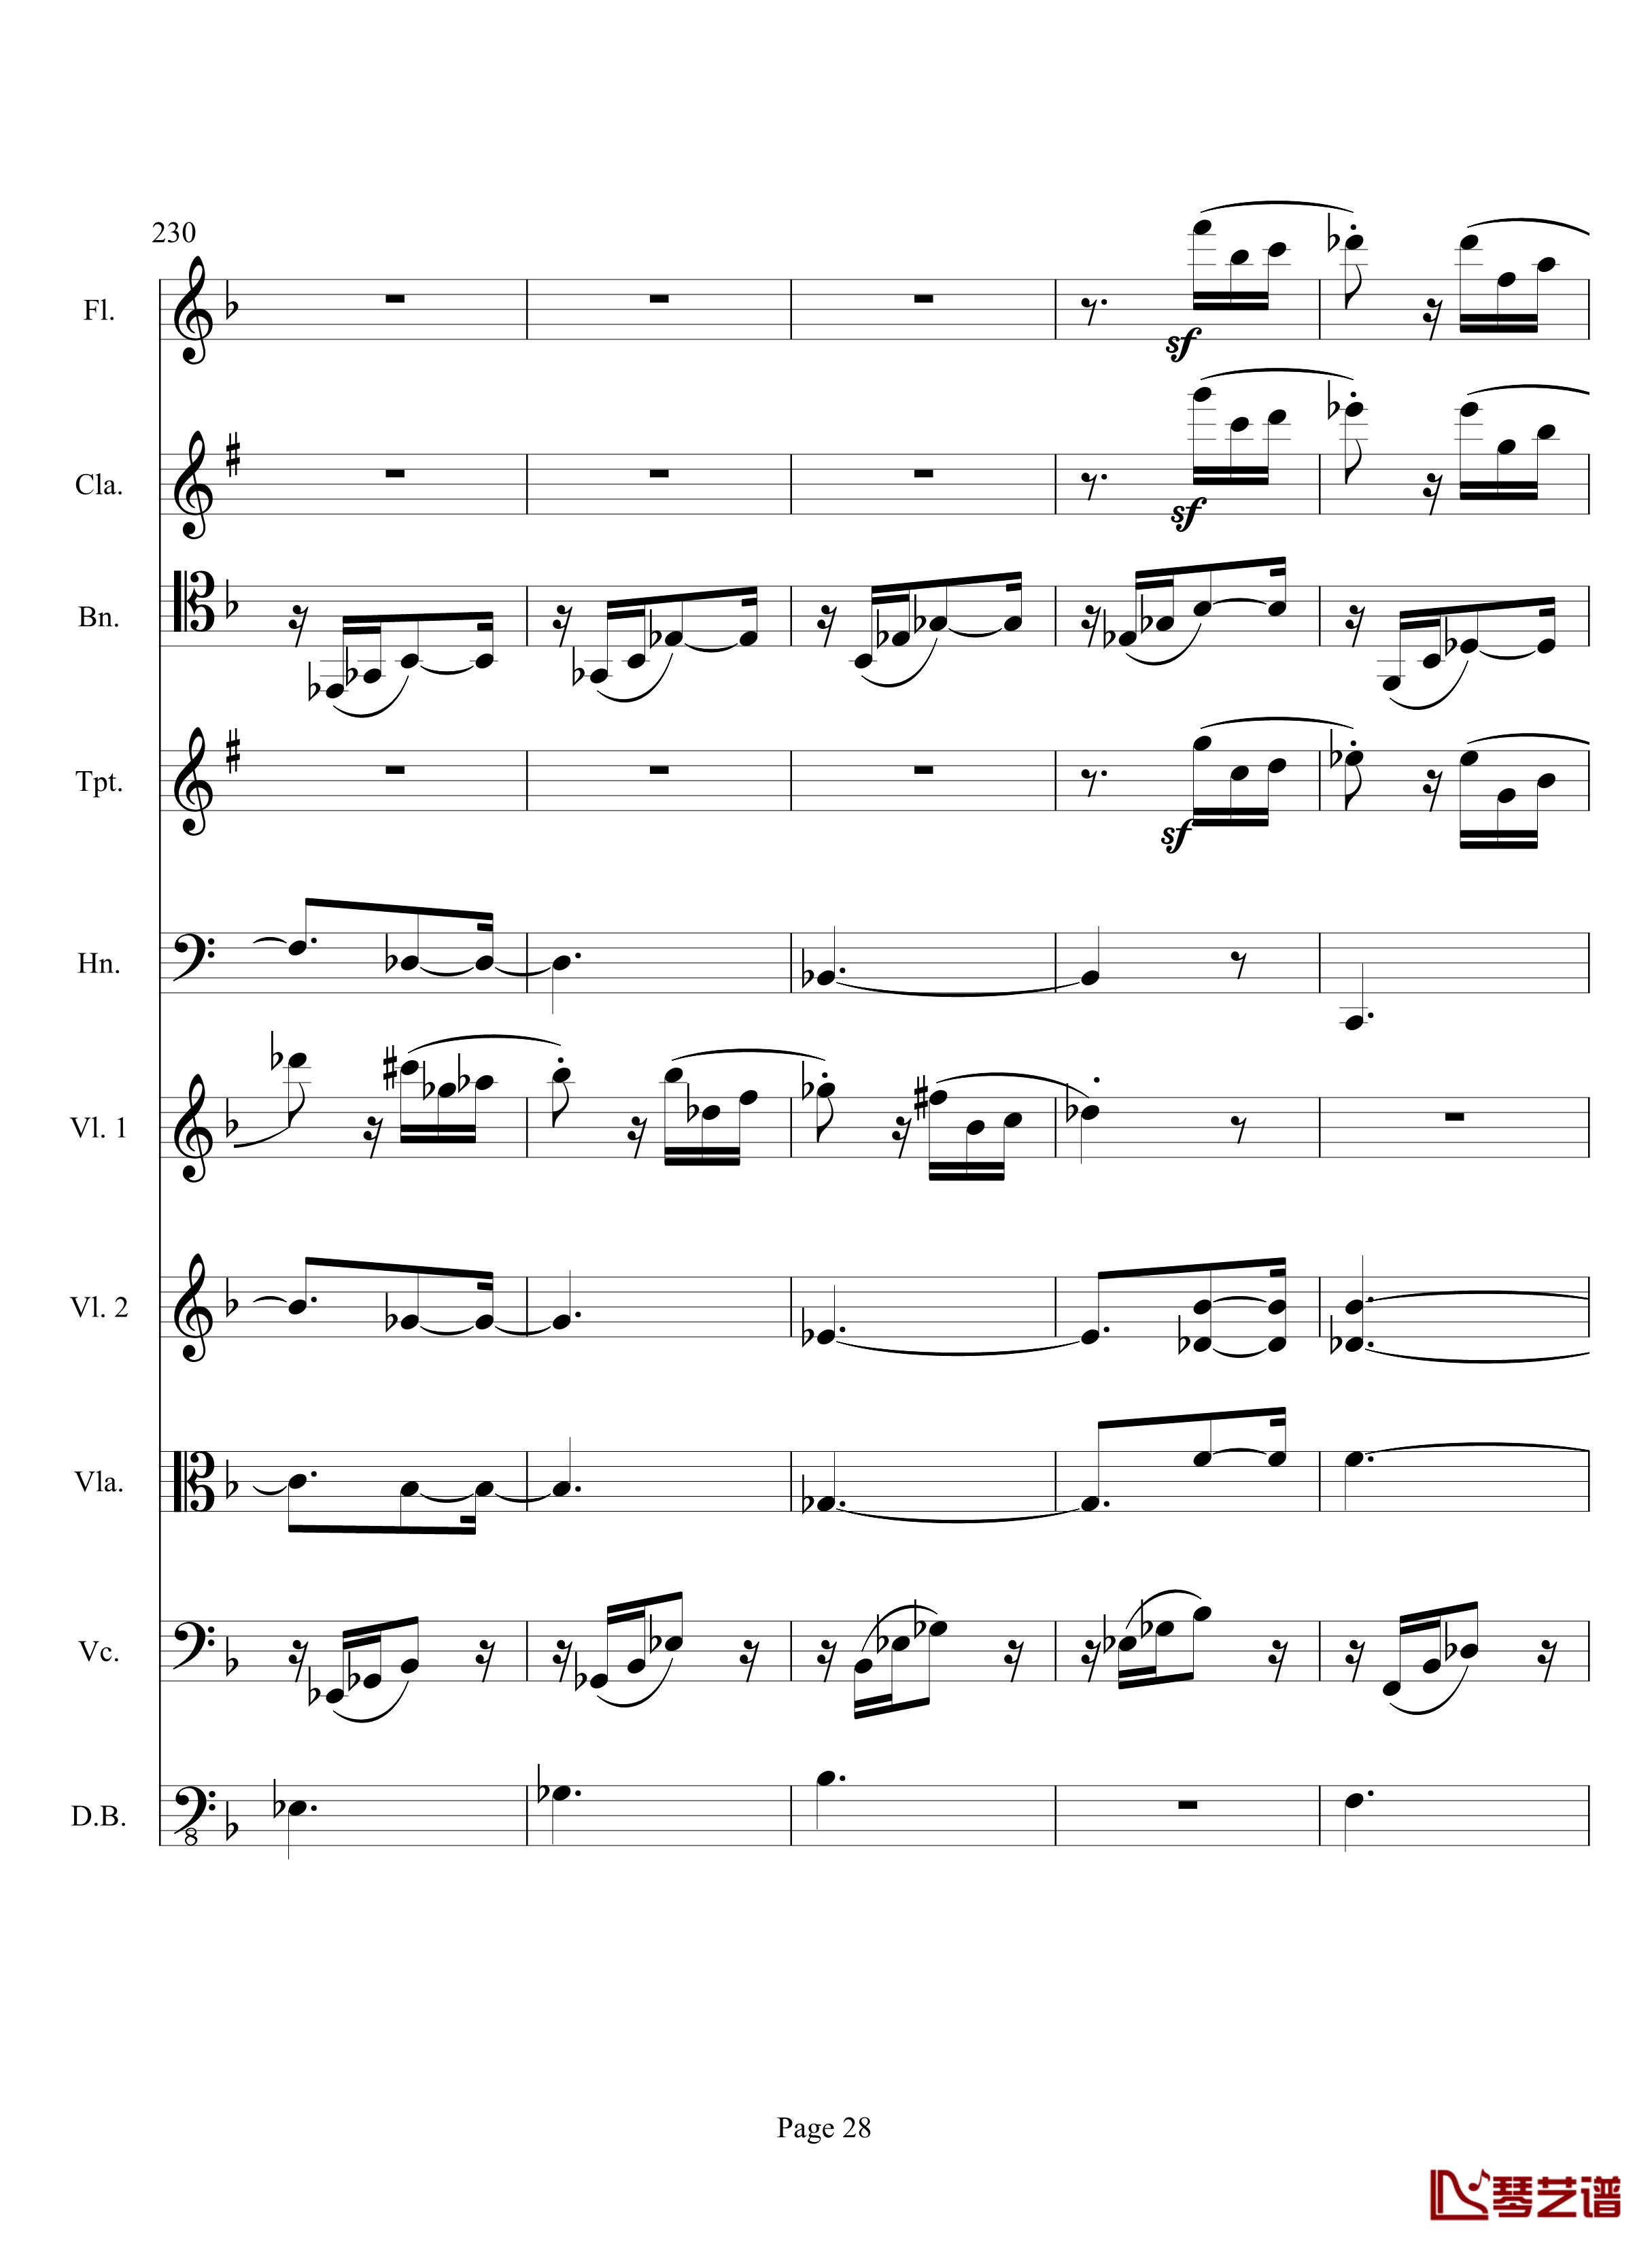 奏鸣曲之交响钢琴谱-第17首-Ⅲ-贝多芬-beethoven28